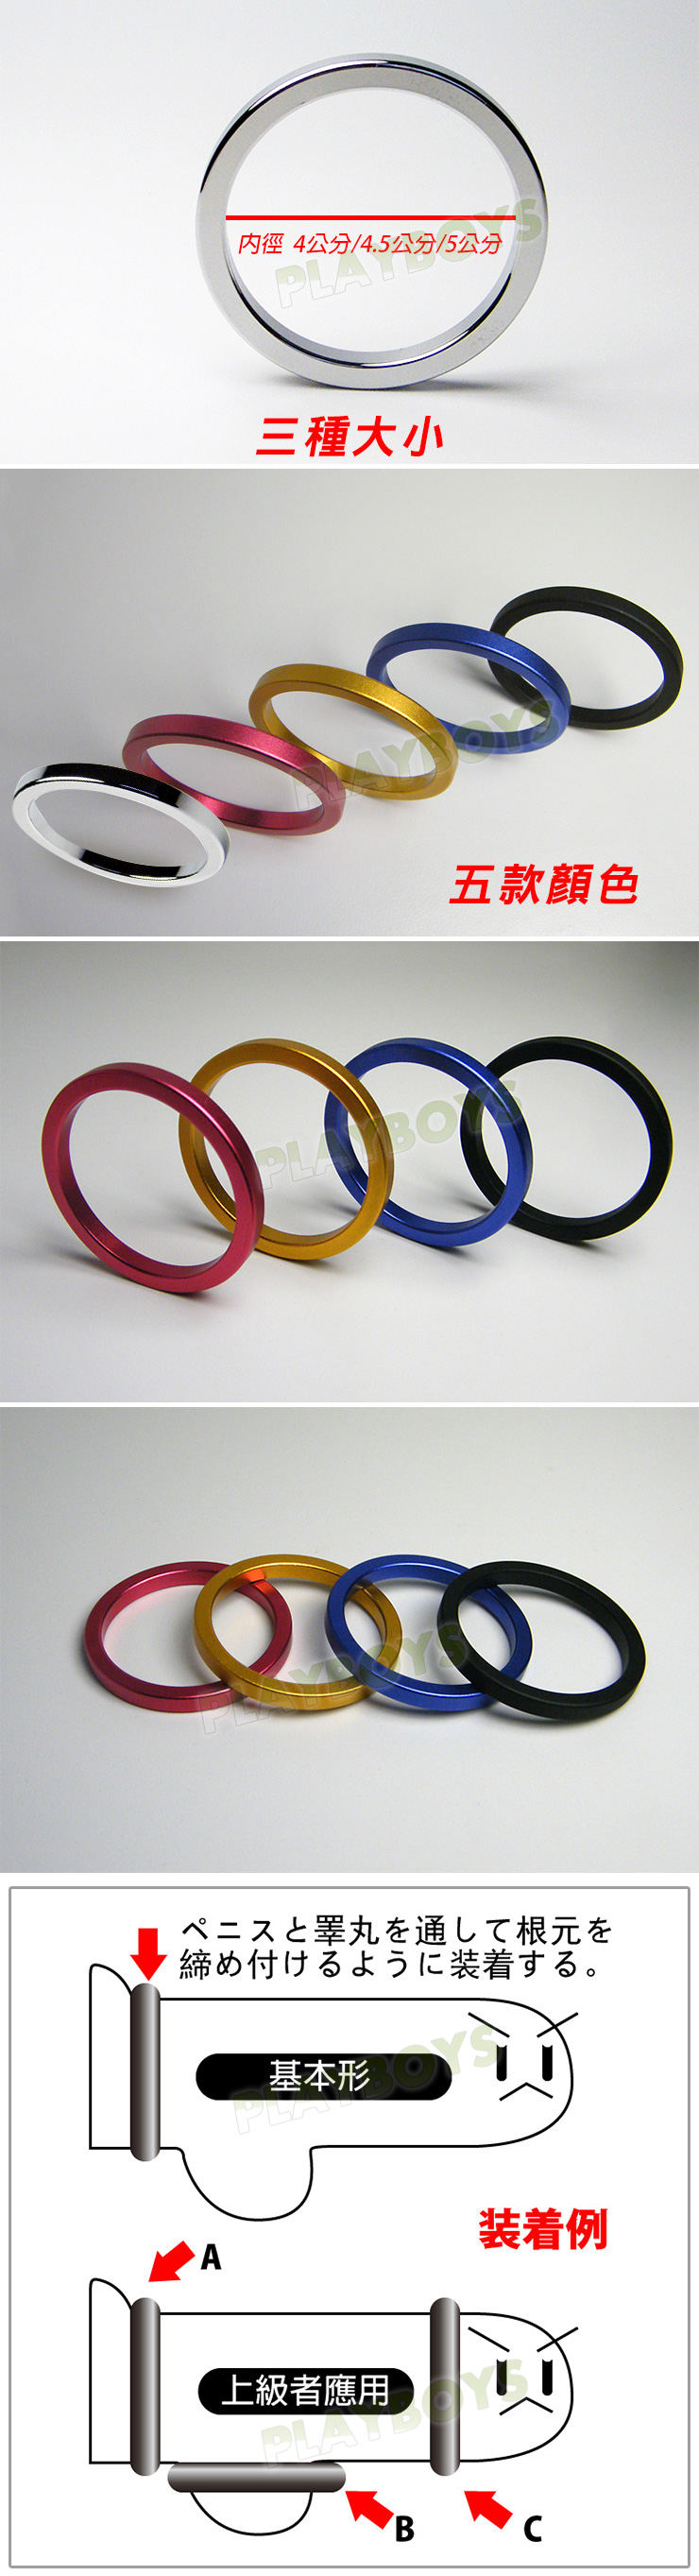 太空鋁延時環-屌環(5公分)藍色